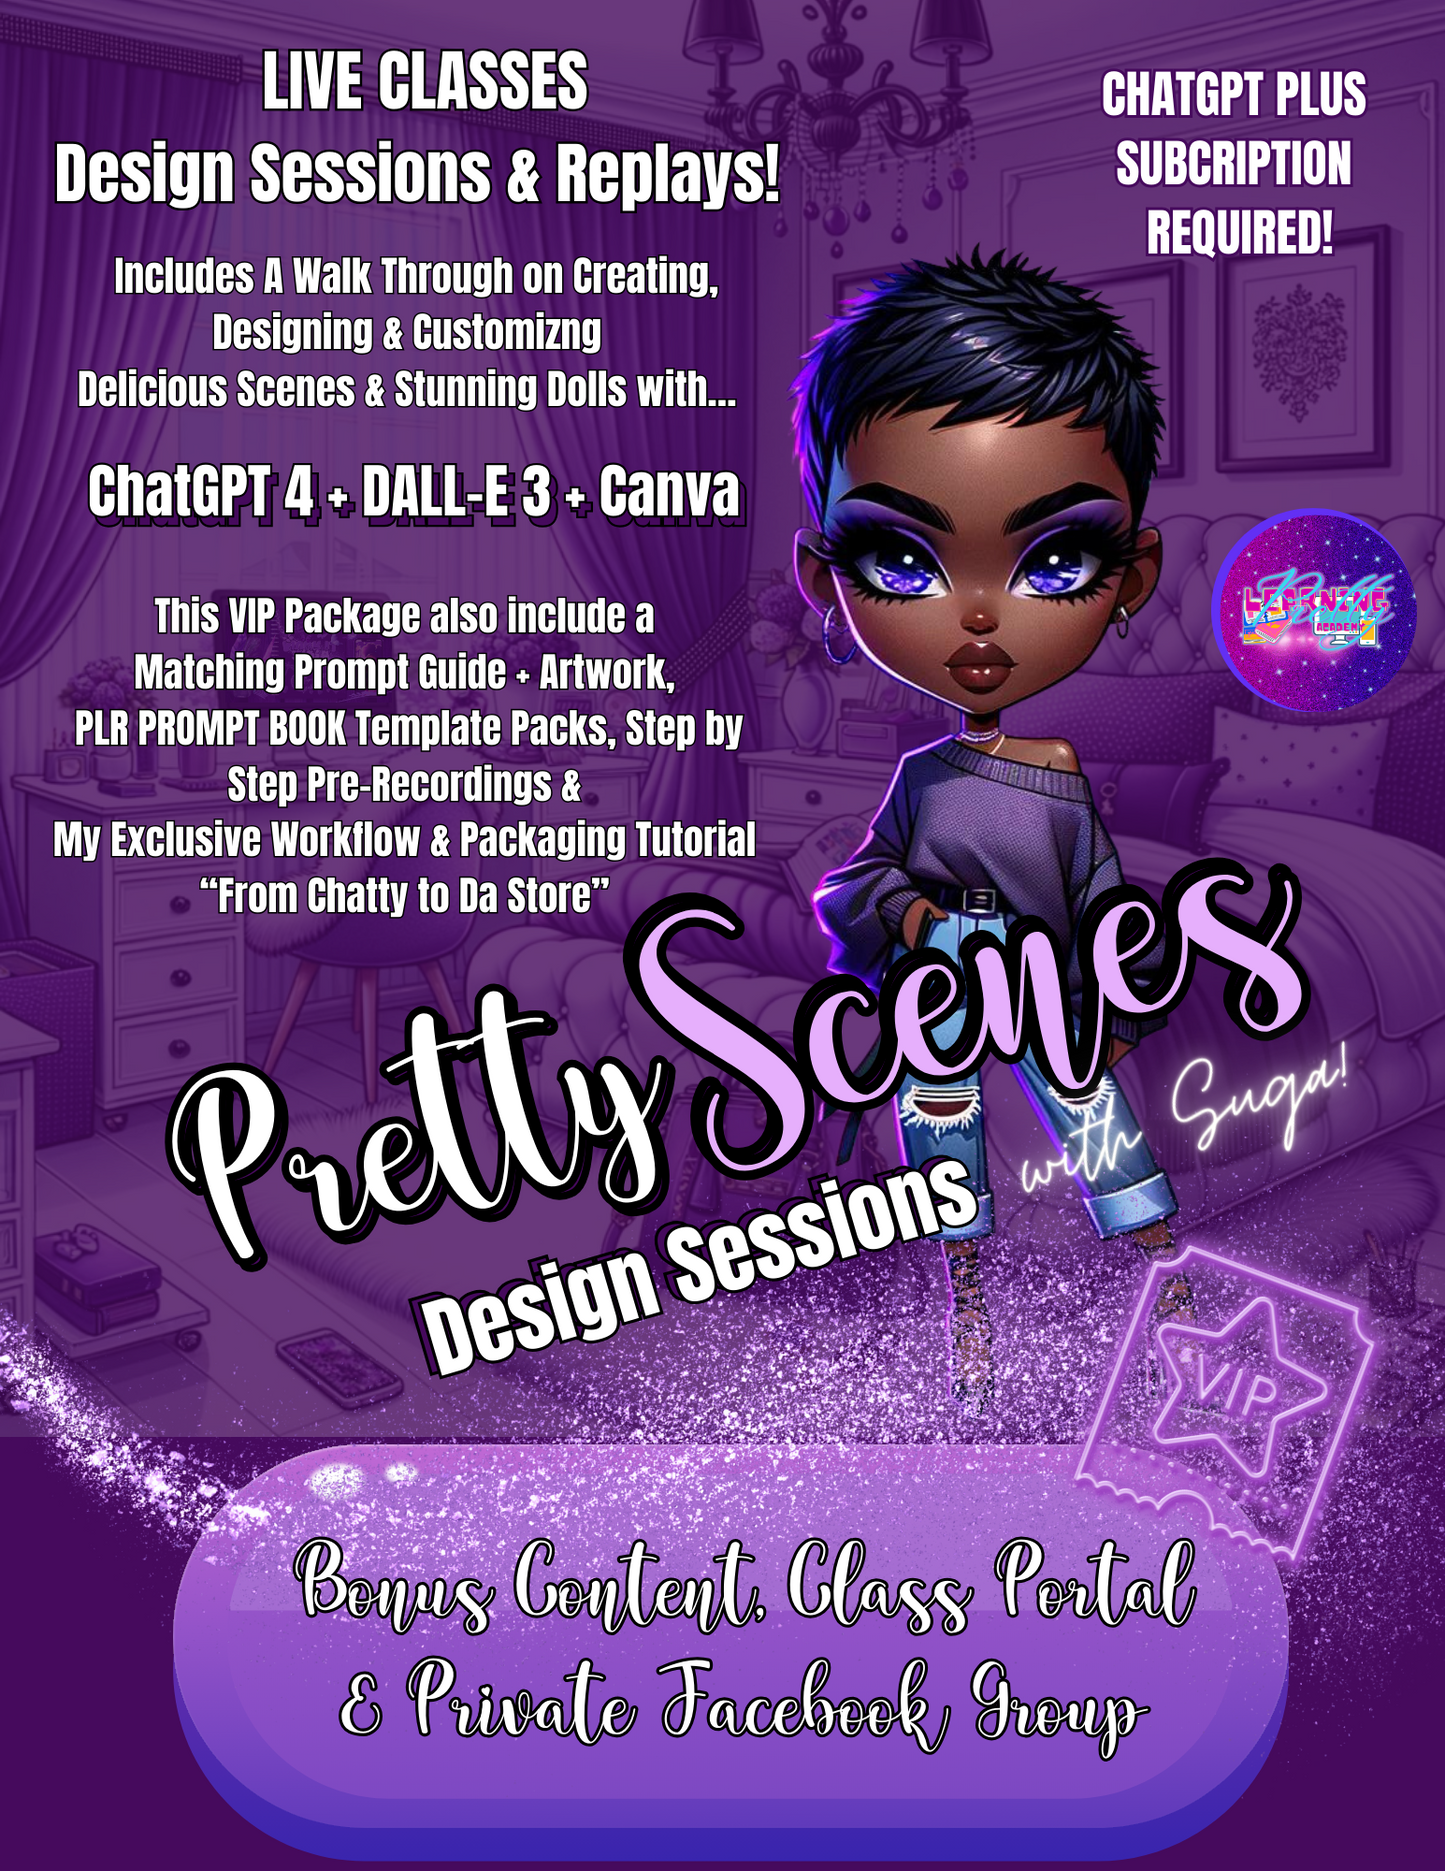 Pretty Scenes ChatGPT + DALL-E 3 + Canva Design Session VIP Package